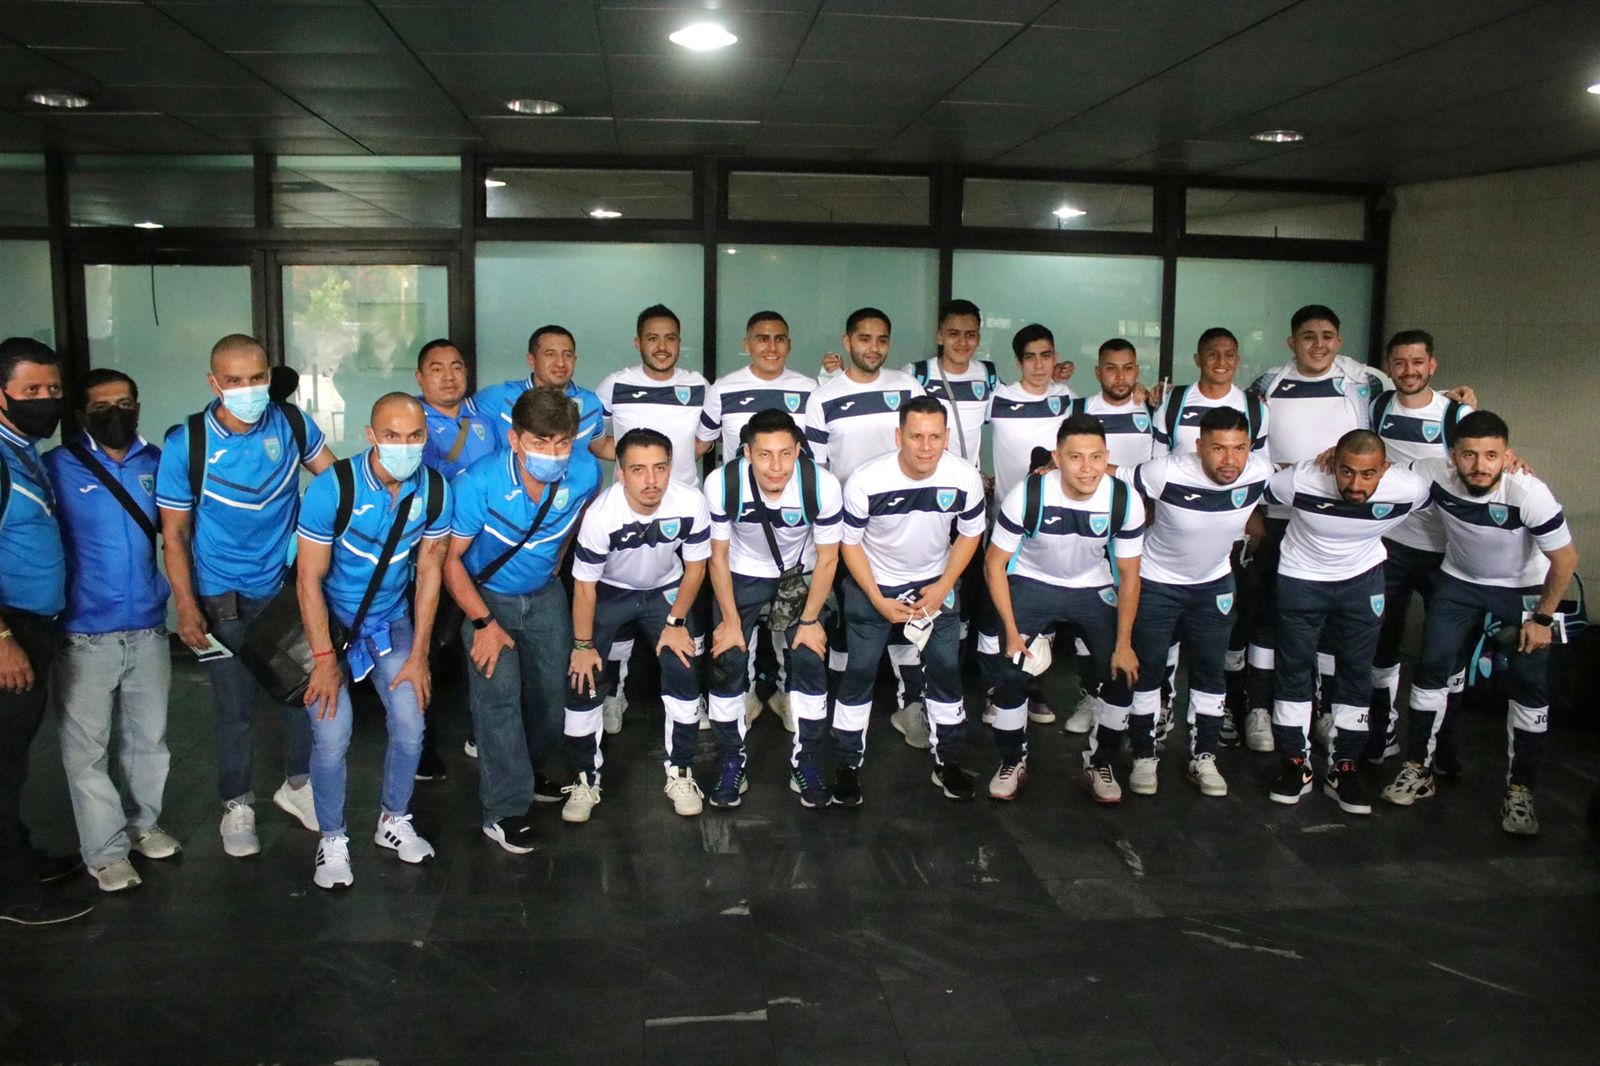 La Selección Nacional de Futsal posa en el aeropuerto La Aurora antes de emprender el viaje a España donde hará el último campamento antes de competir en el Mundial de Lituania 2021. (Foto Prensa Libre: Cortesía Fedefut)